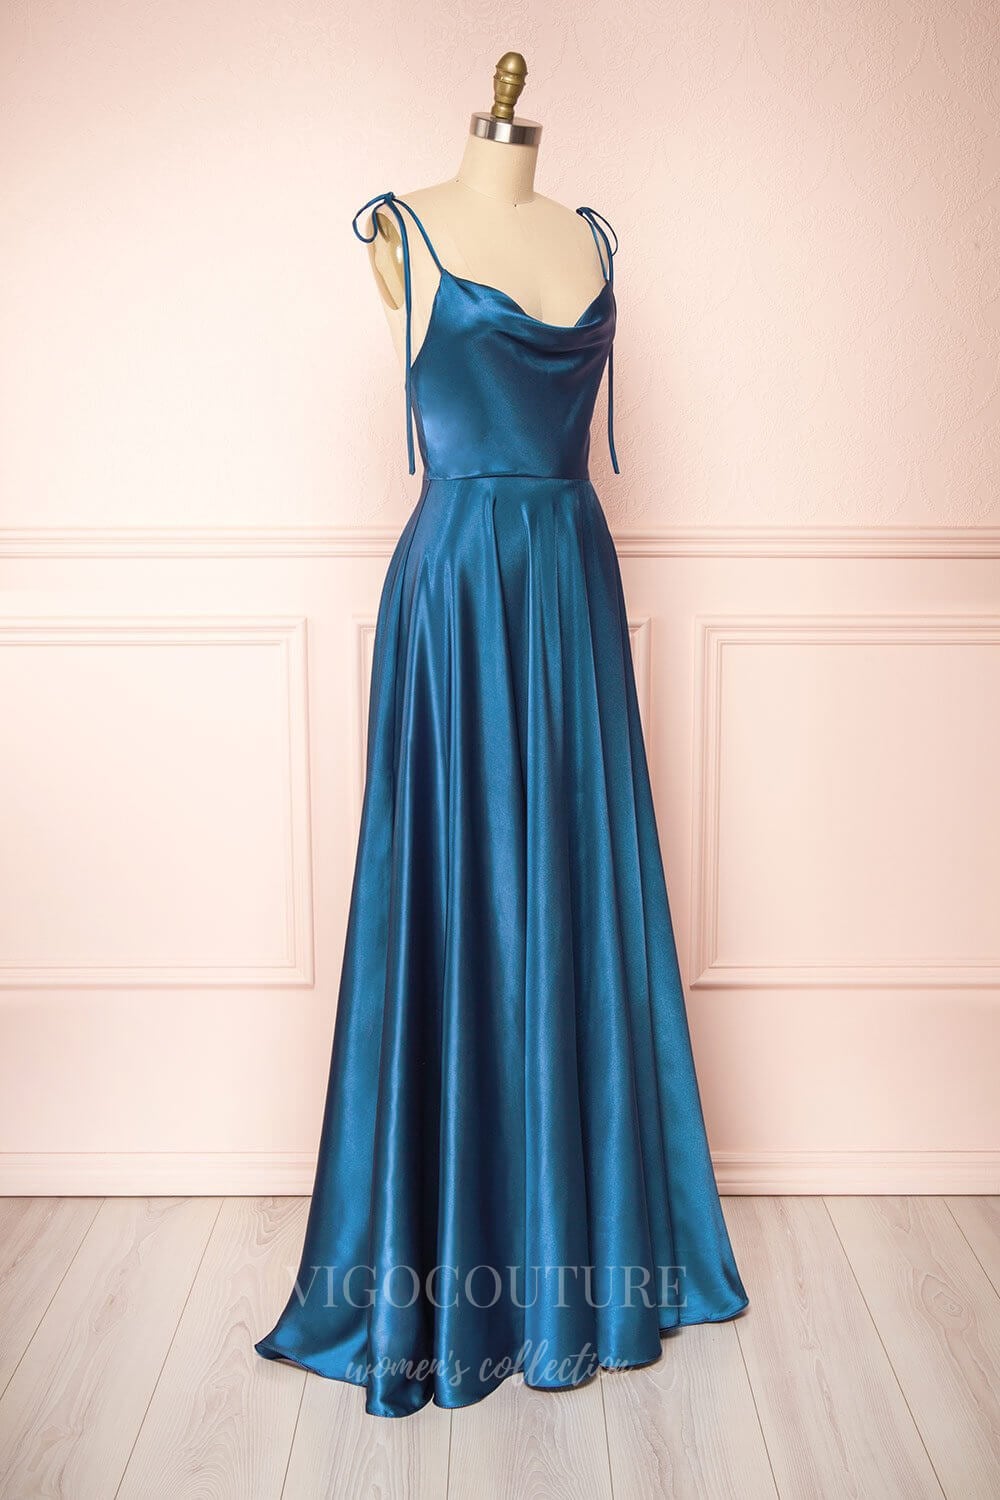 vigocouture-Dusty Pink Spaghetti Strap Prom Dress 20578-Prom Dresses-vigocouture-